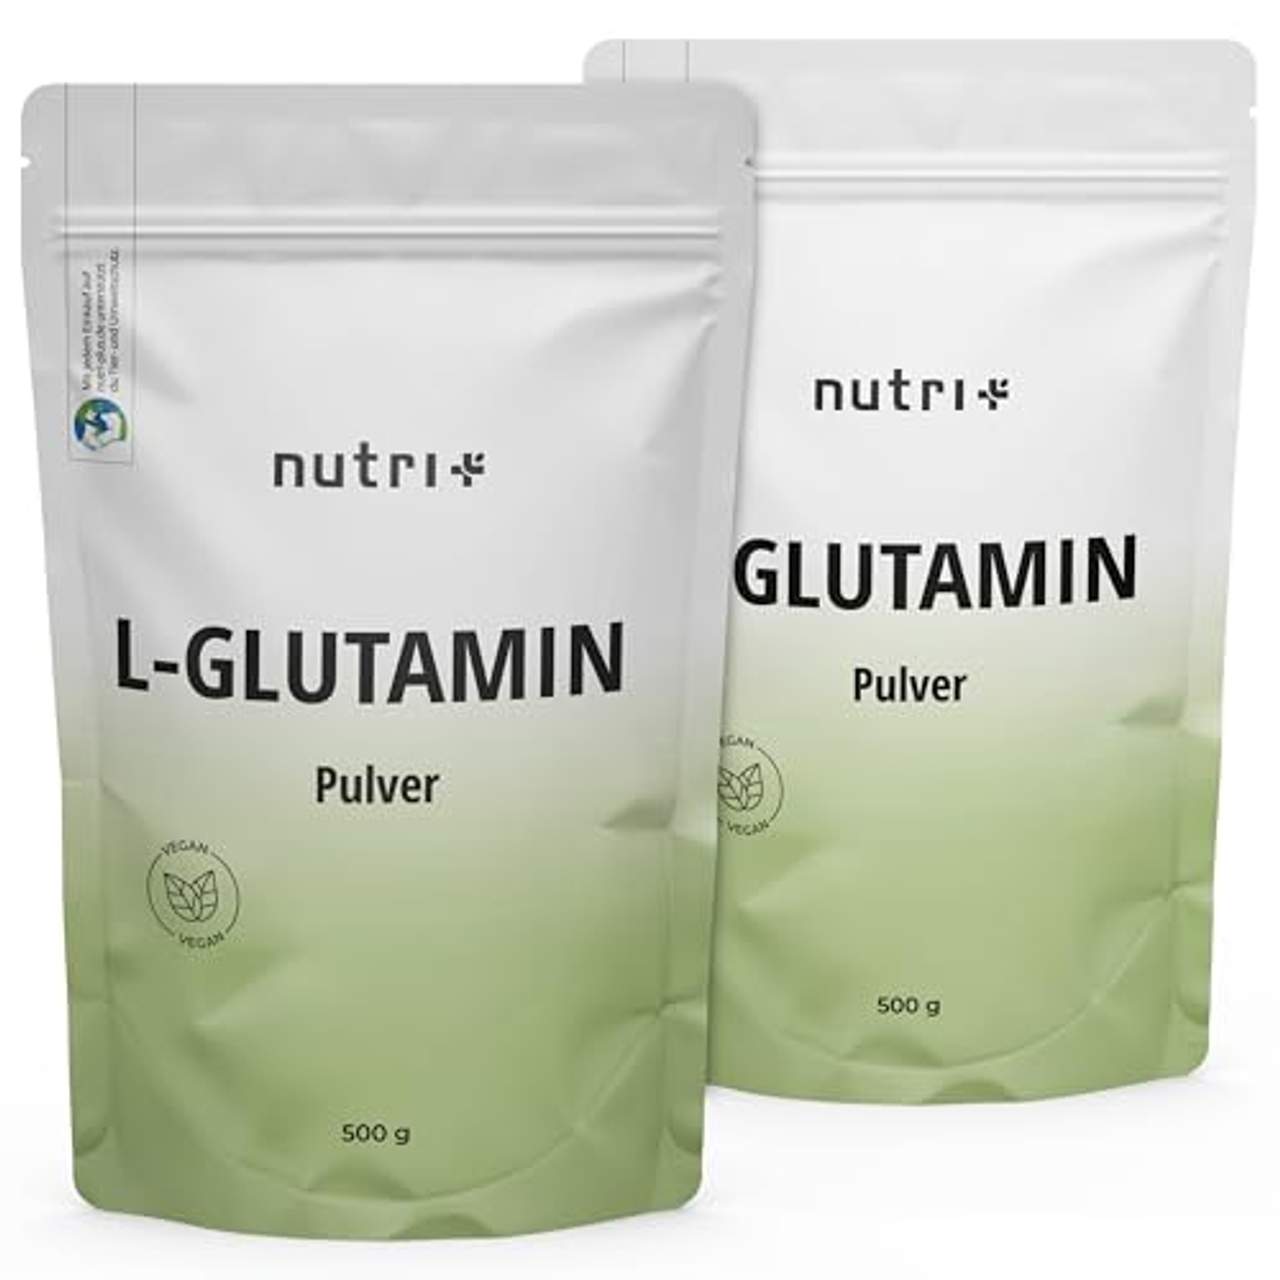 L-GLUTAMIN Pulver 500g Vegan